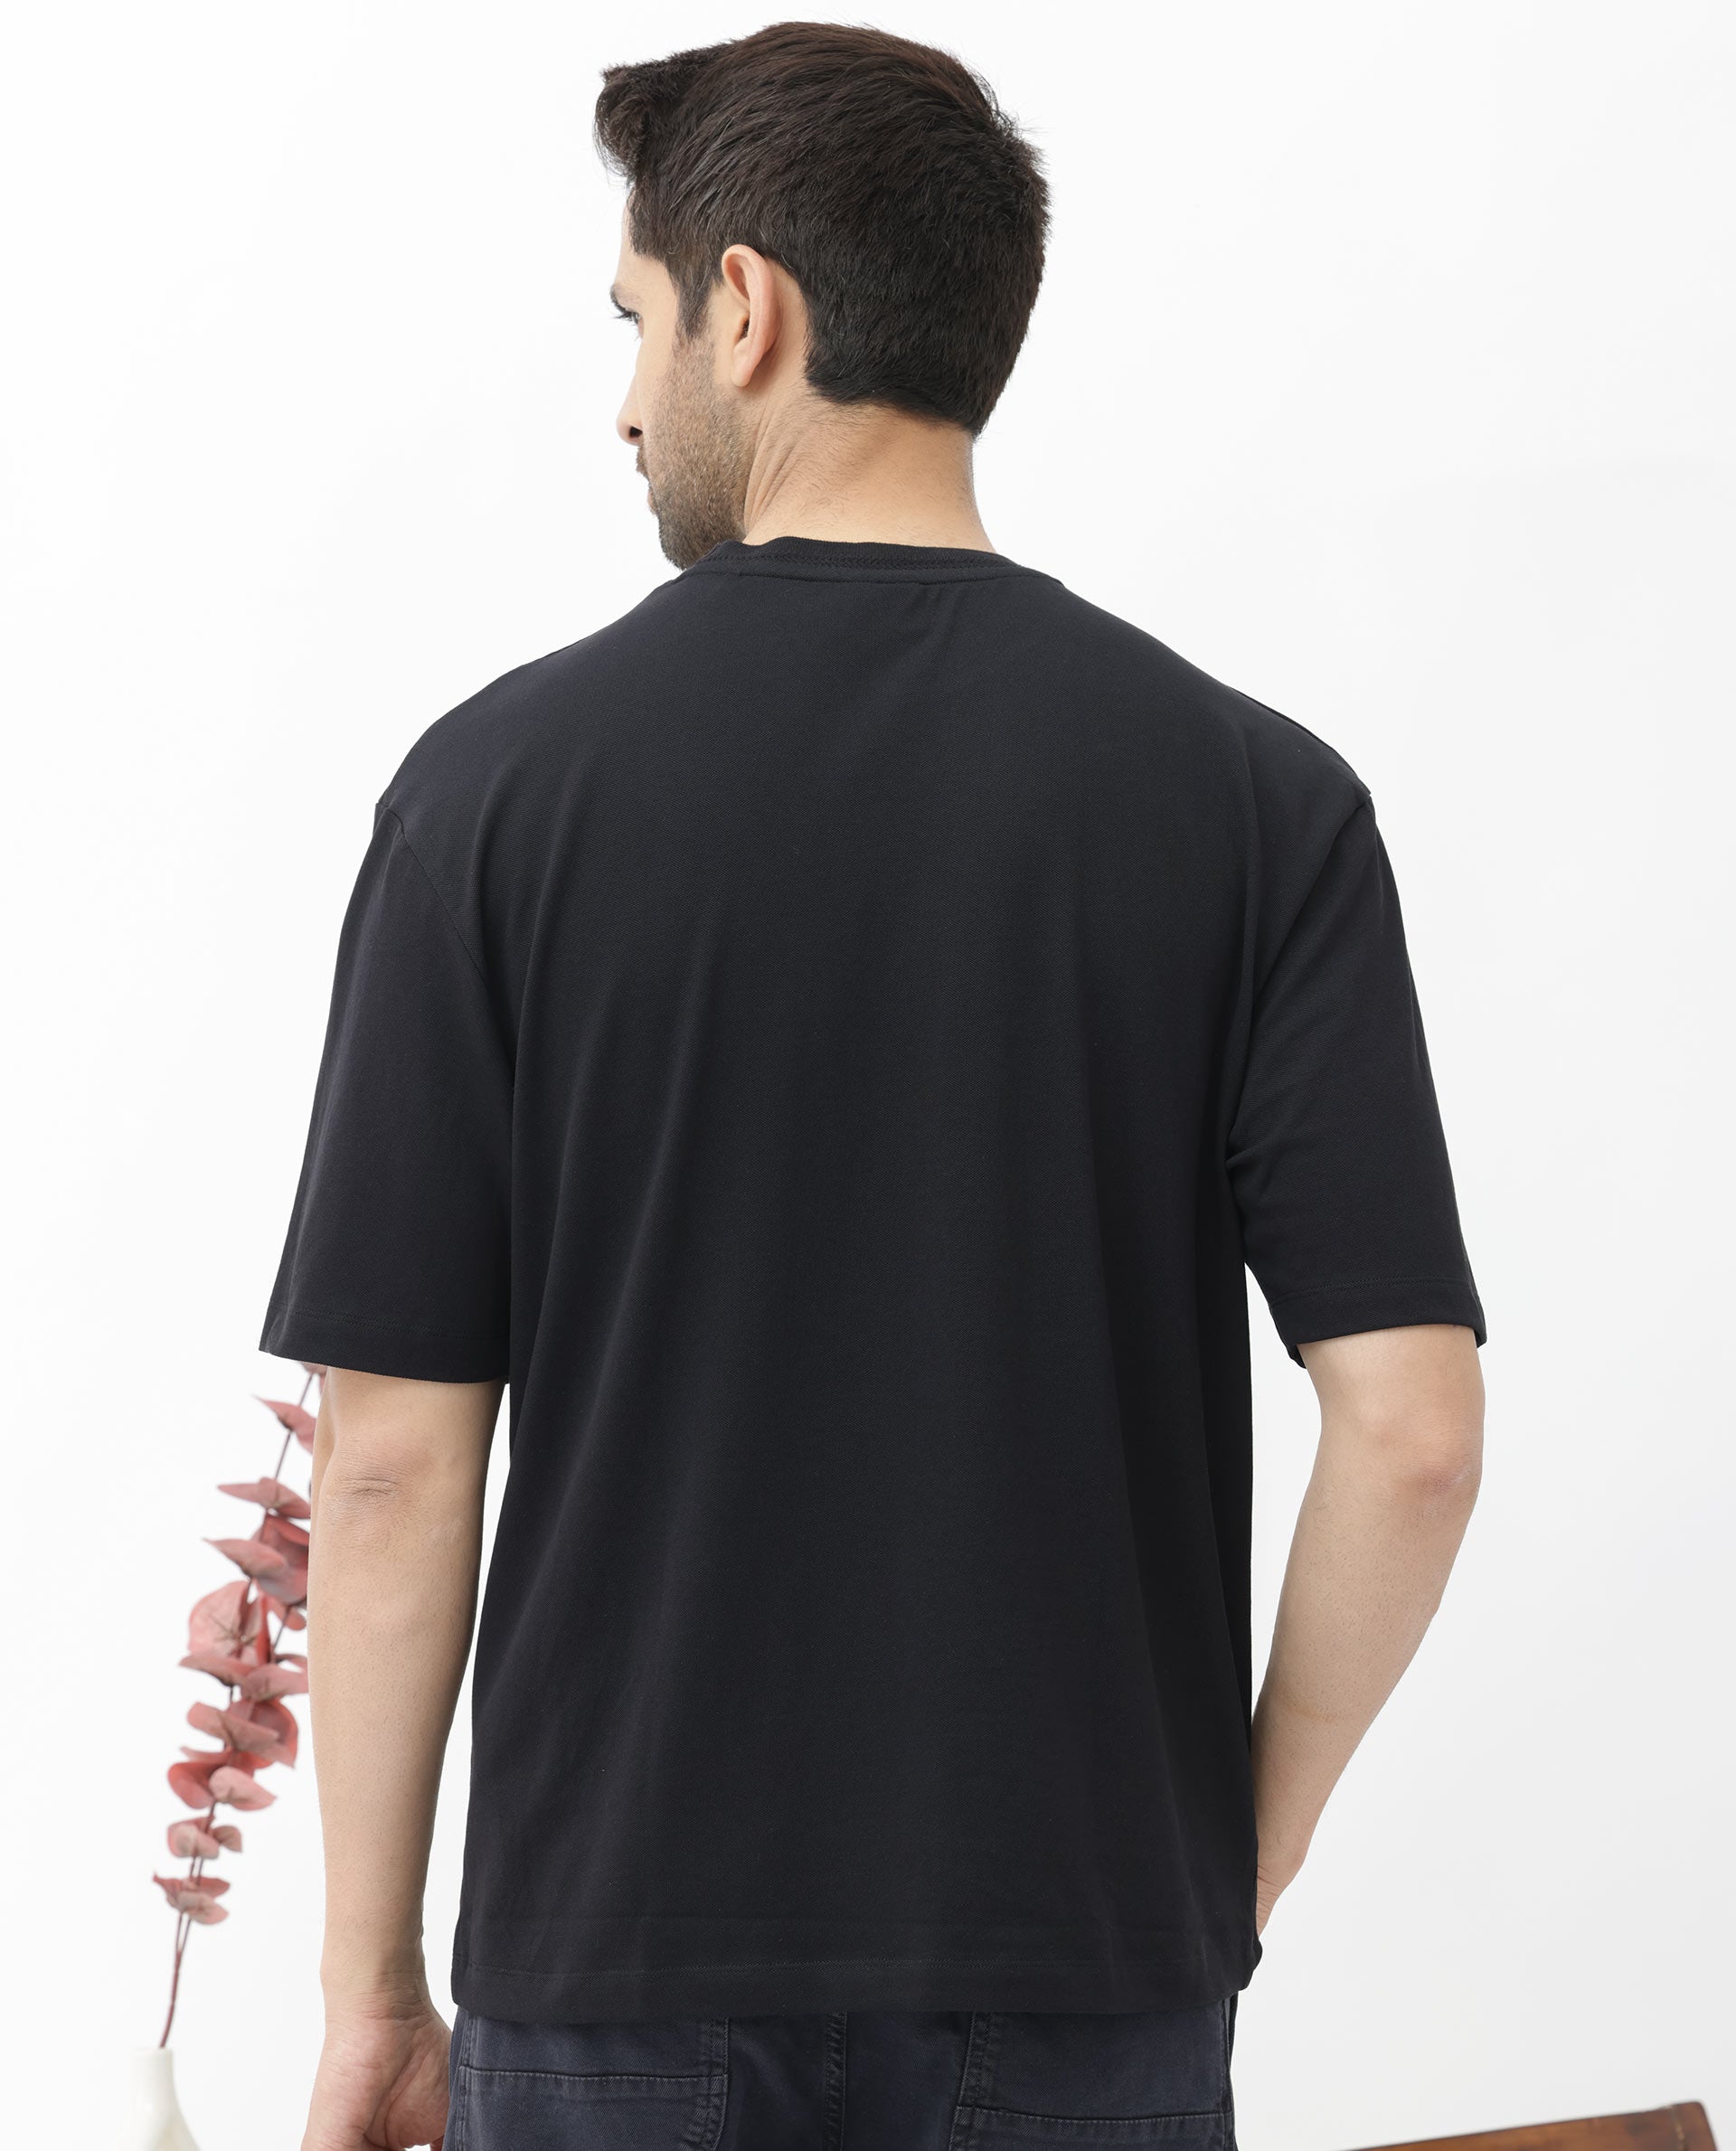 Black Drop Shoulder T Shirt at Rs 241 in New Delhi